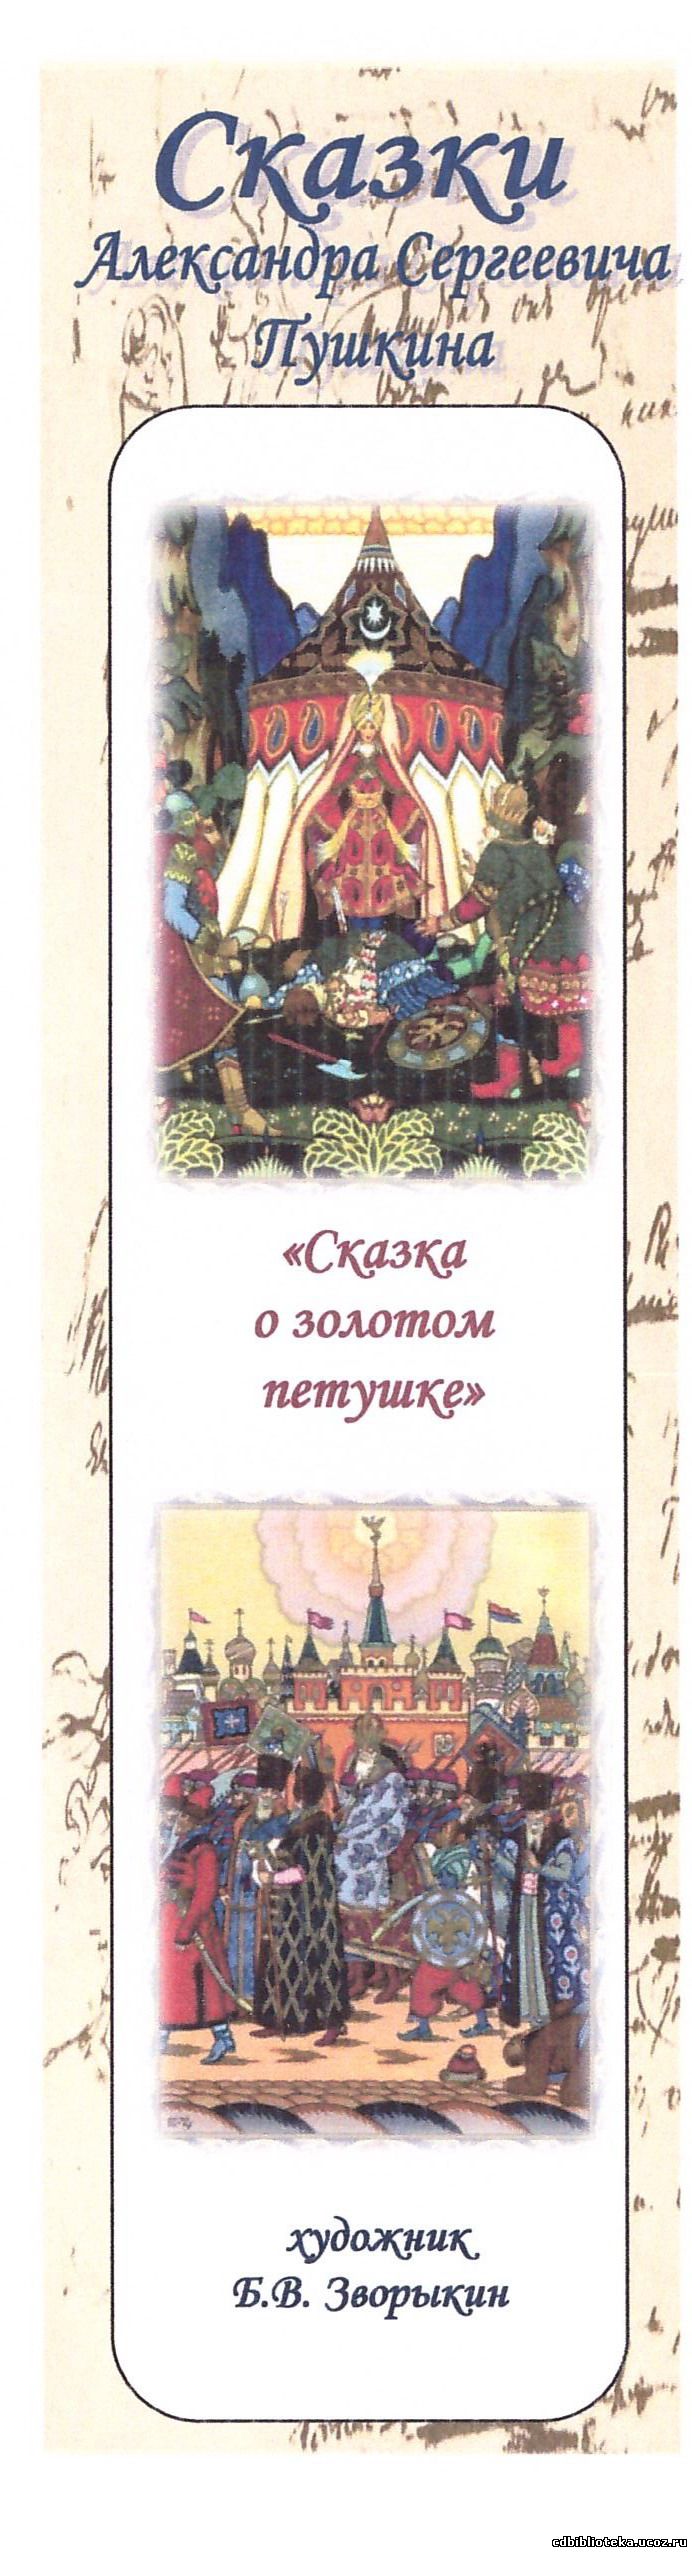 Скачать сказки пушкина бесплатно pdf